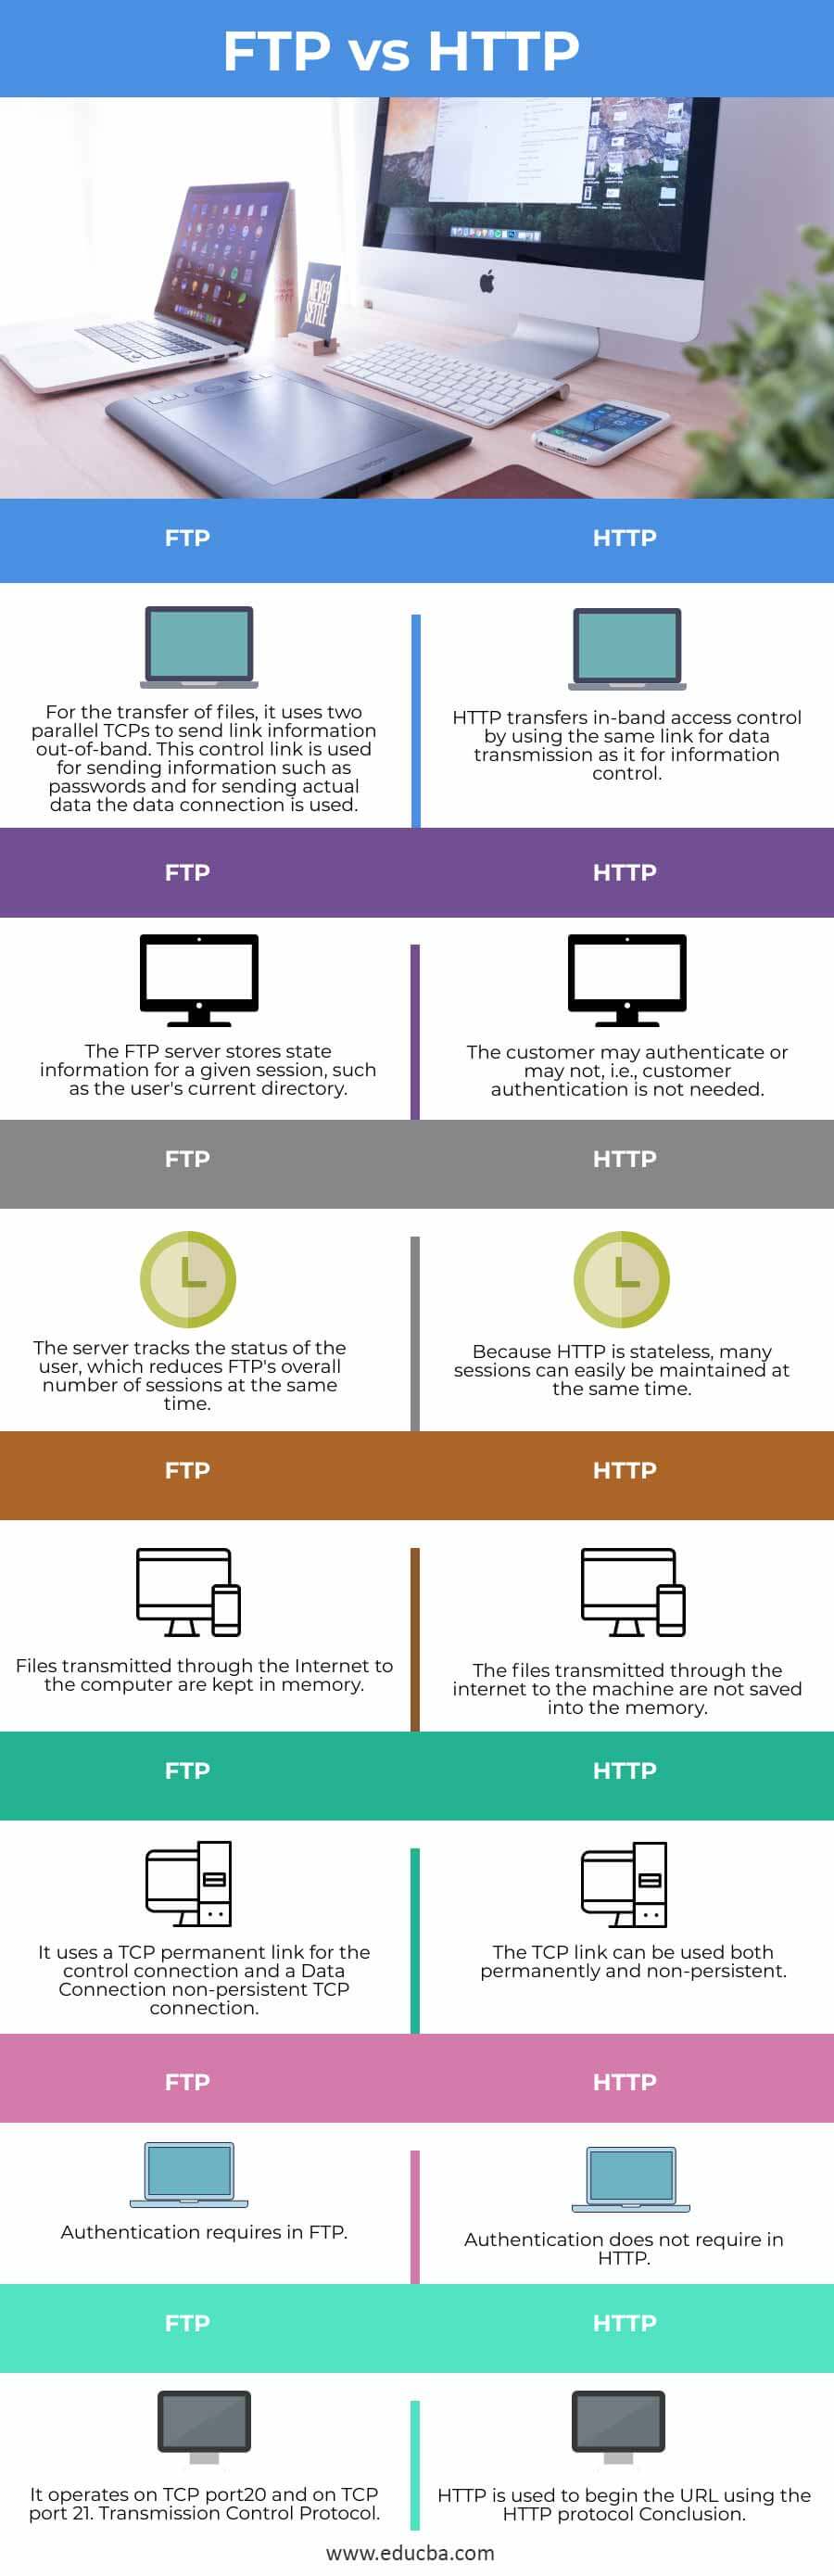 FTP-vs-HTTP-info